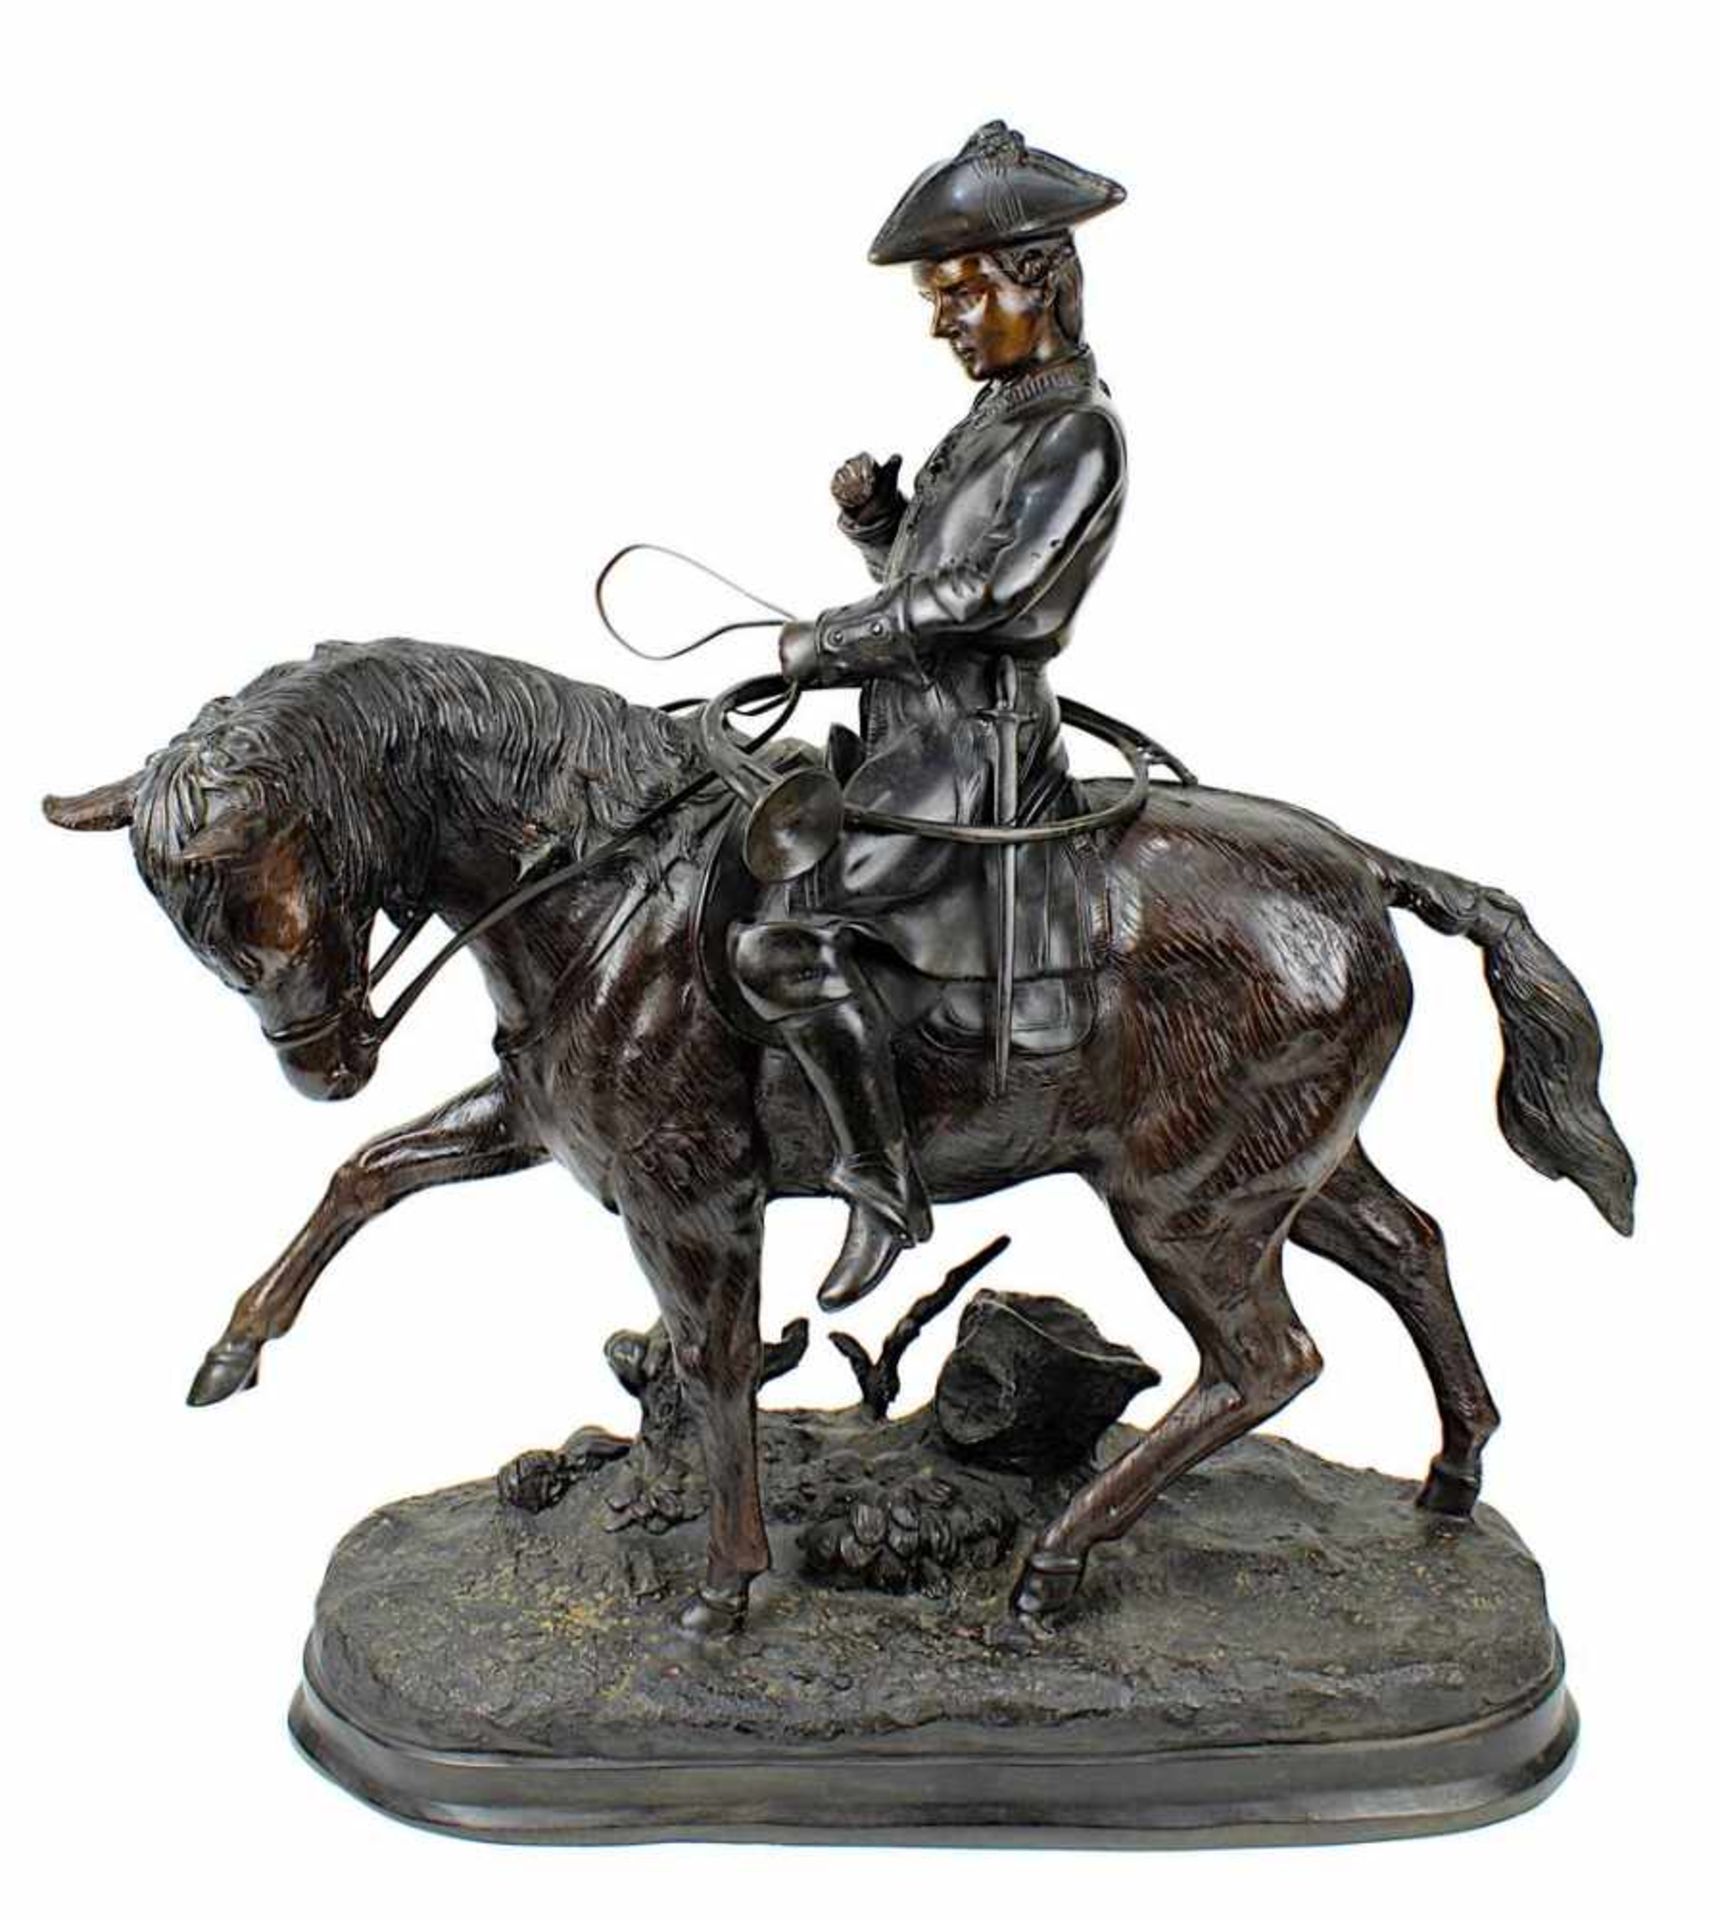 Reiter mit Jagdhorn, Metall bronzefarben patiniert, 20. Jh., große Figur im Stil des 18. Jh., auf